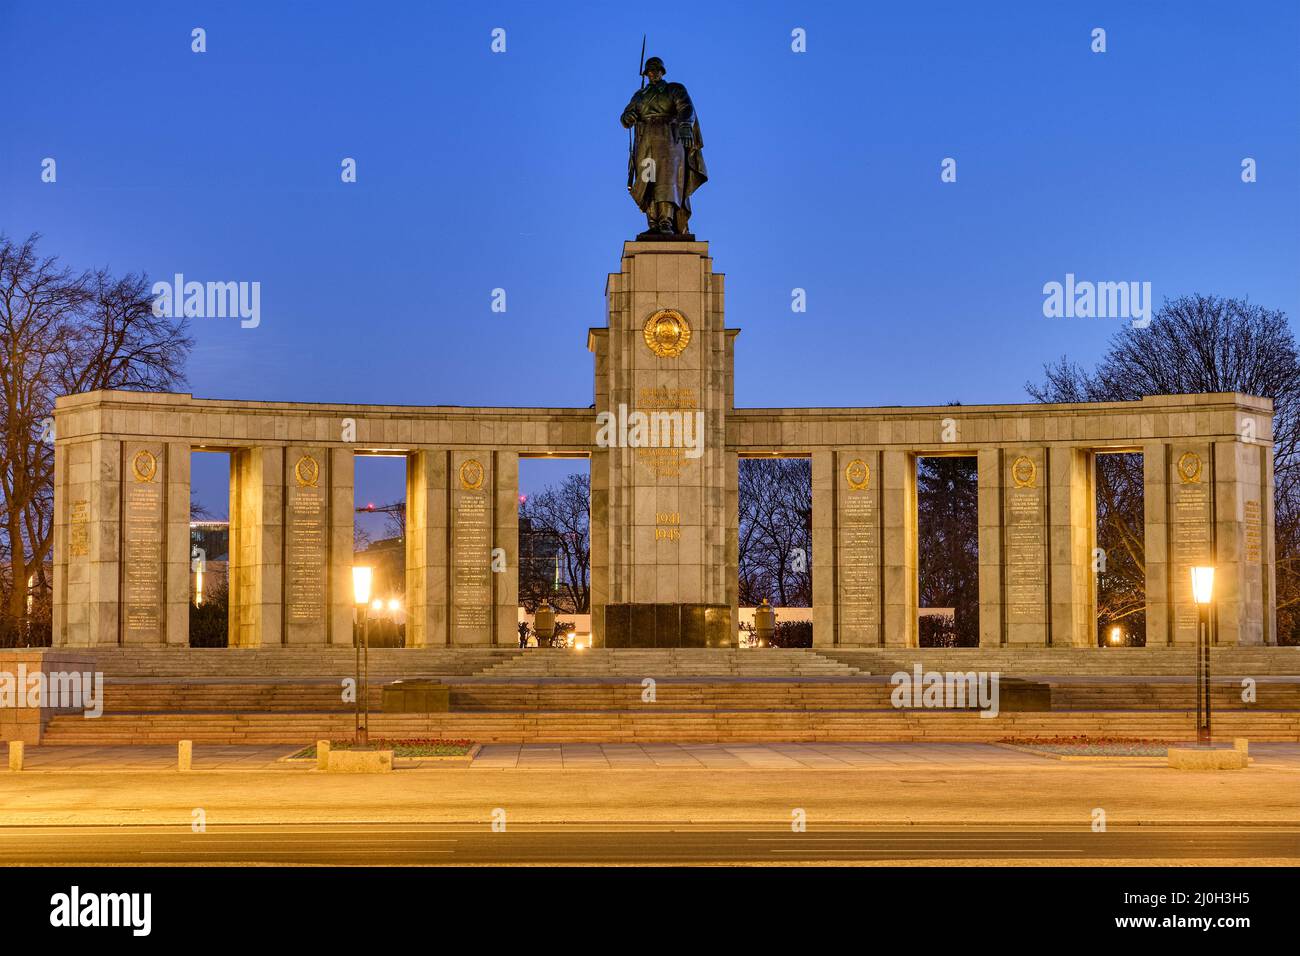 The Soviet War Memorial in the Tiergarten in Berlin at night Stock Photo